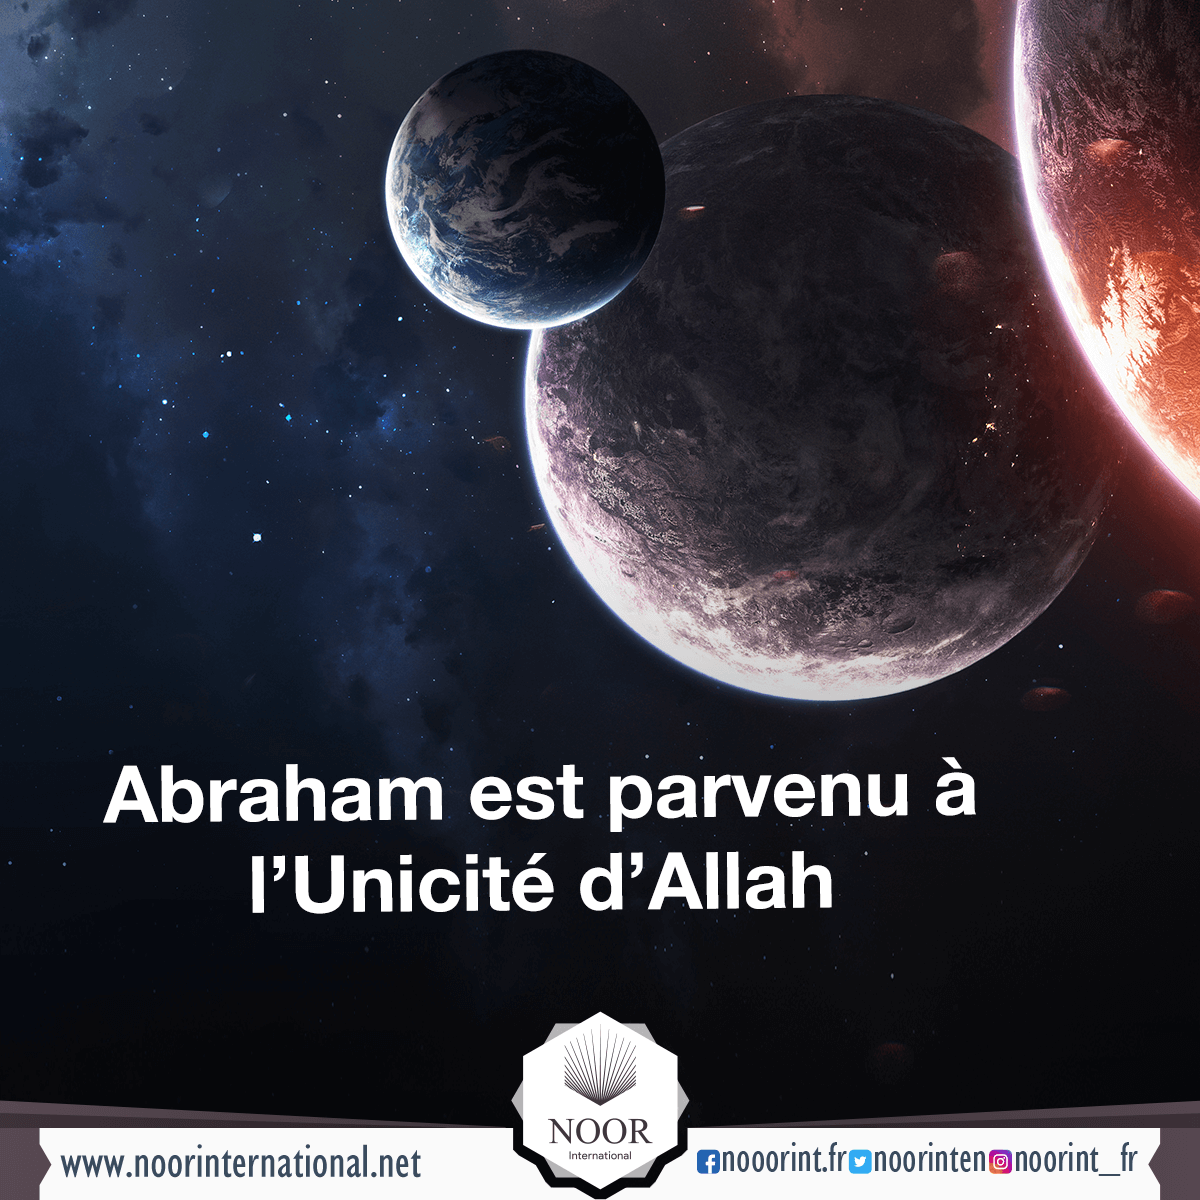 Abraham est parvenu à l’Unicité d’Allah